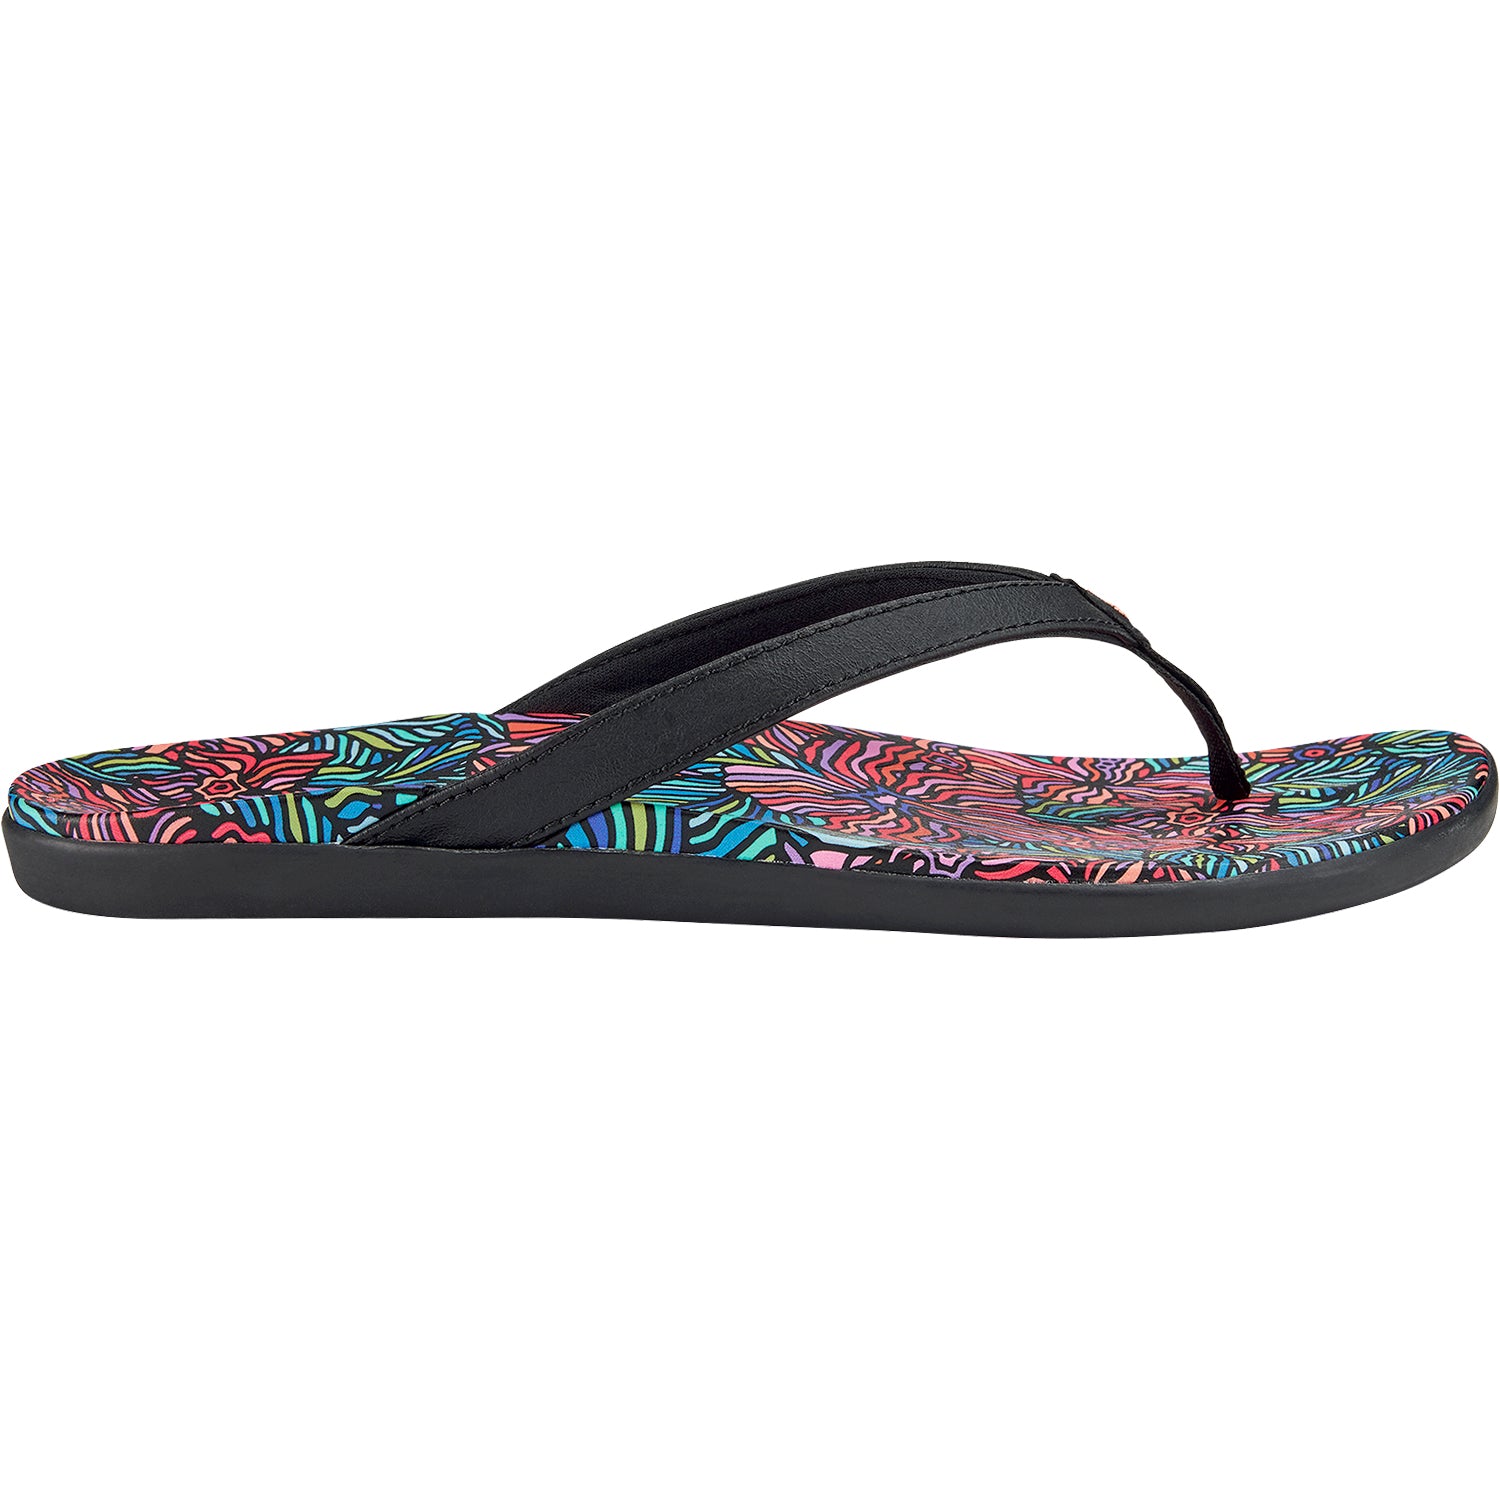 OluKai Ho'opio Hau Onyx | Women's Beach Sandals | Footwear etc.